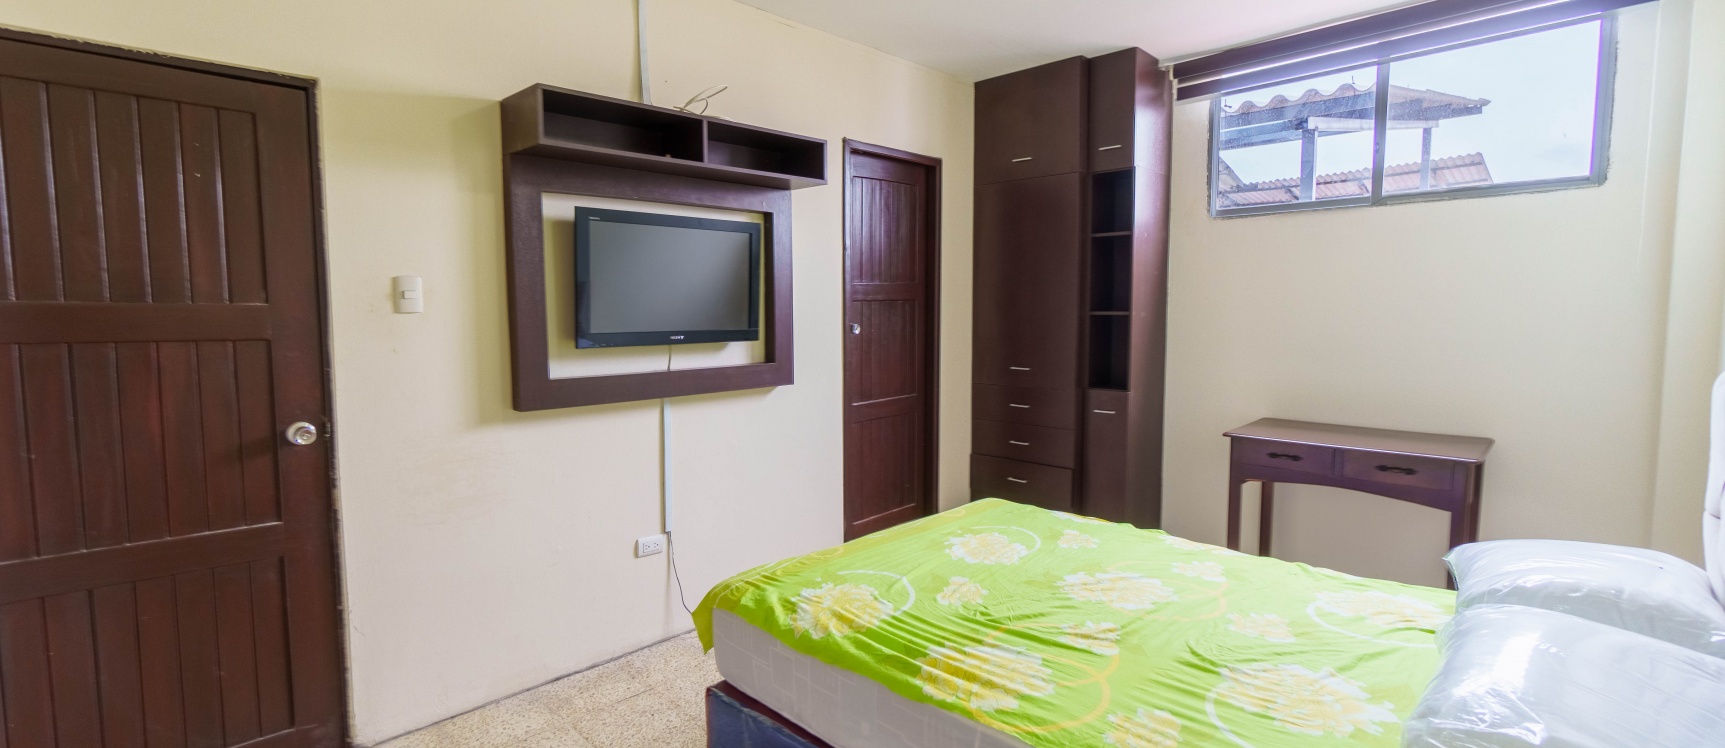 GeoBienes - Suite en alquiler ubicada en Kennedy Vieja, Norte de Guayaquil - Plusvalia Guayaquil Casas de venta y alquiler Inmobiliaria Ecuador